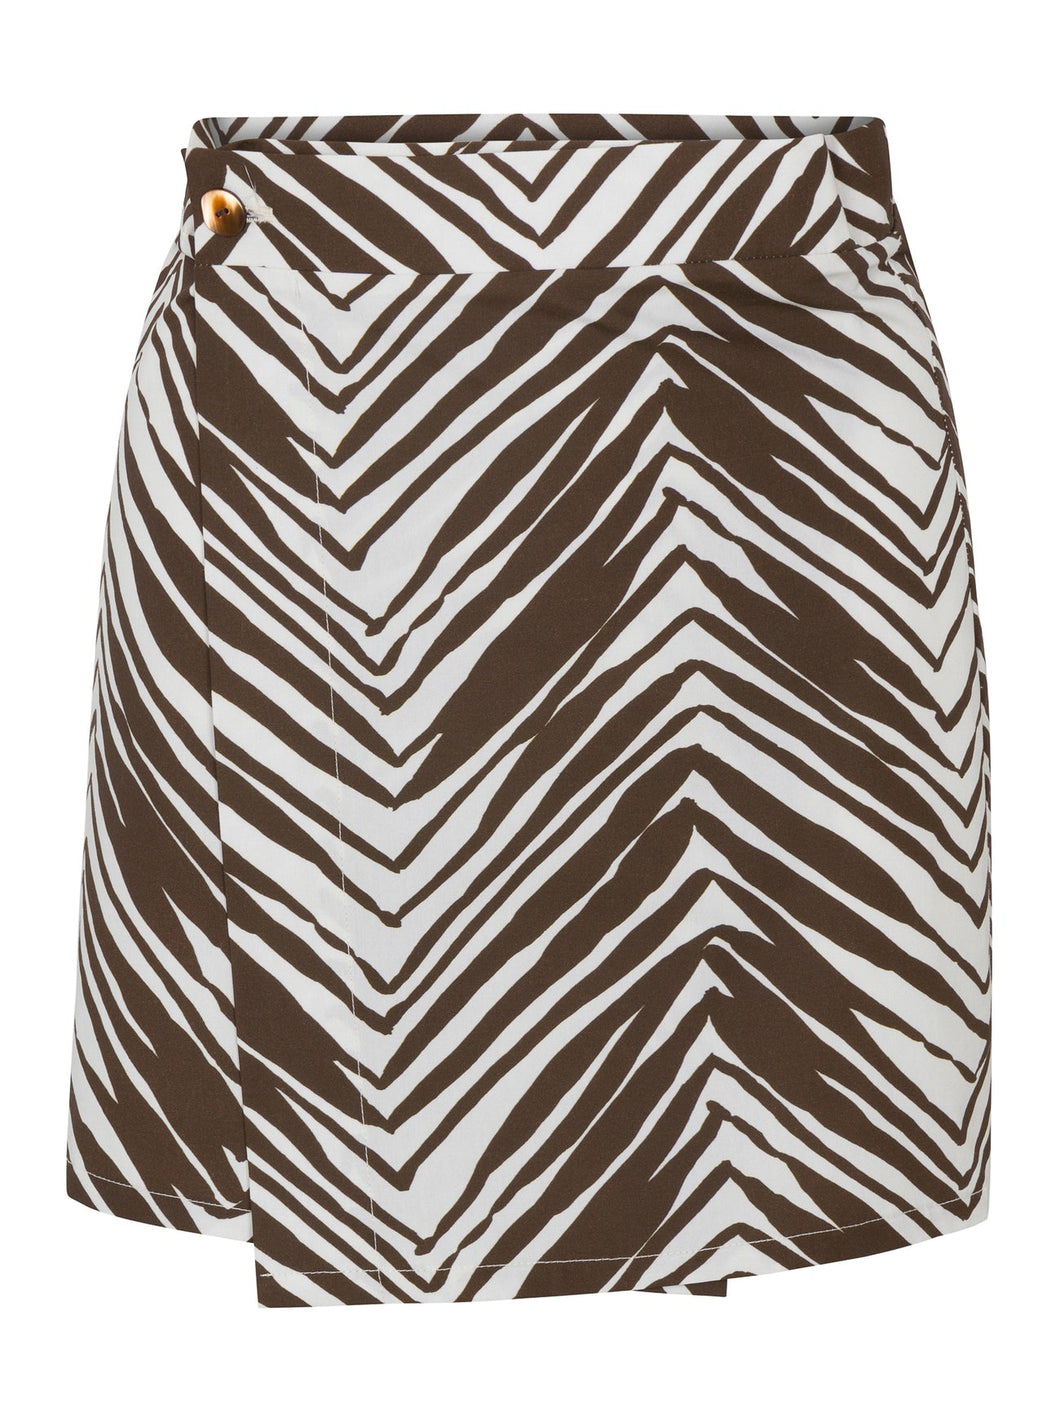 Hevron Wild Zebra Skirt